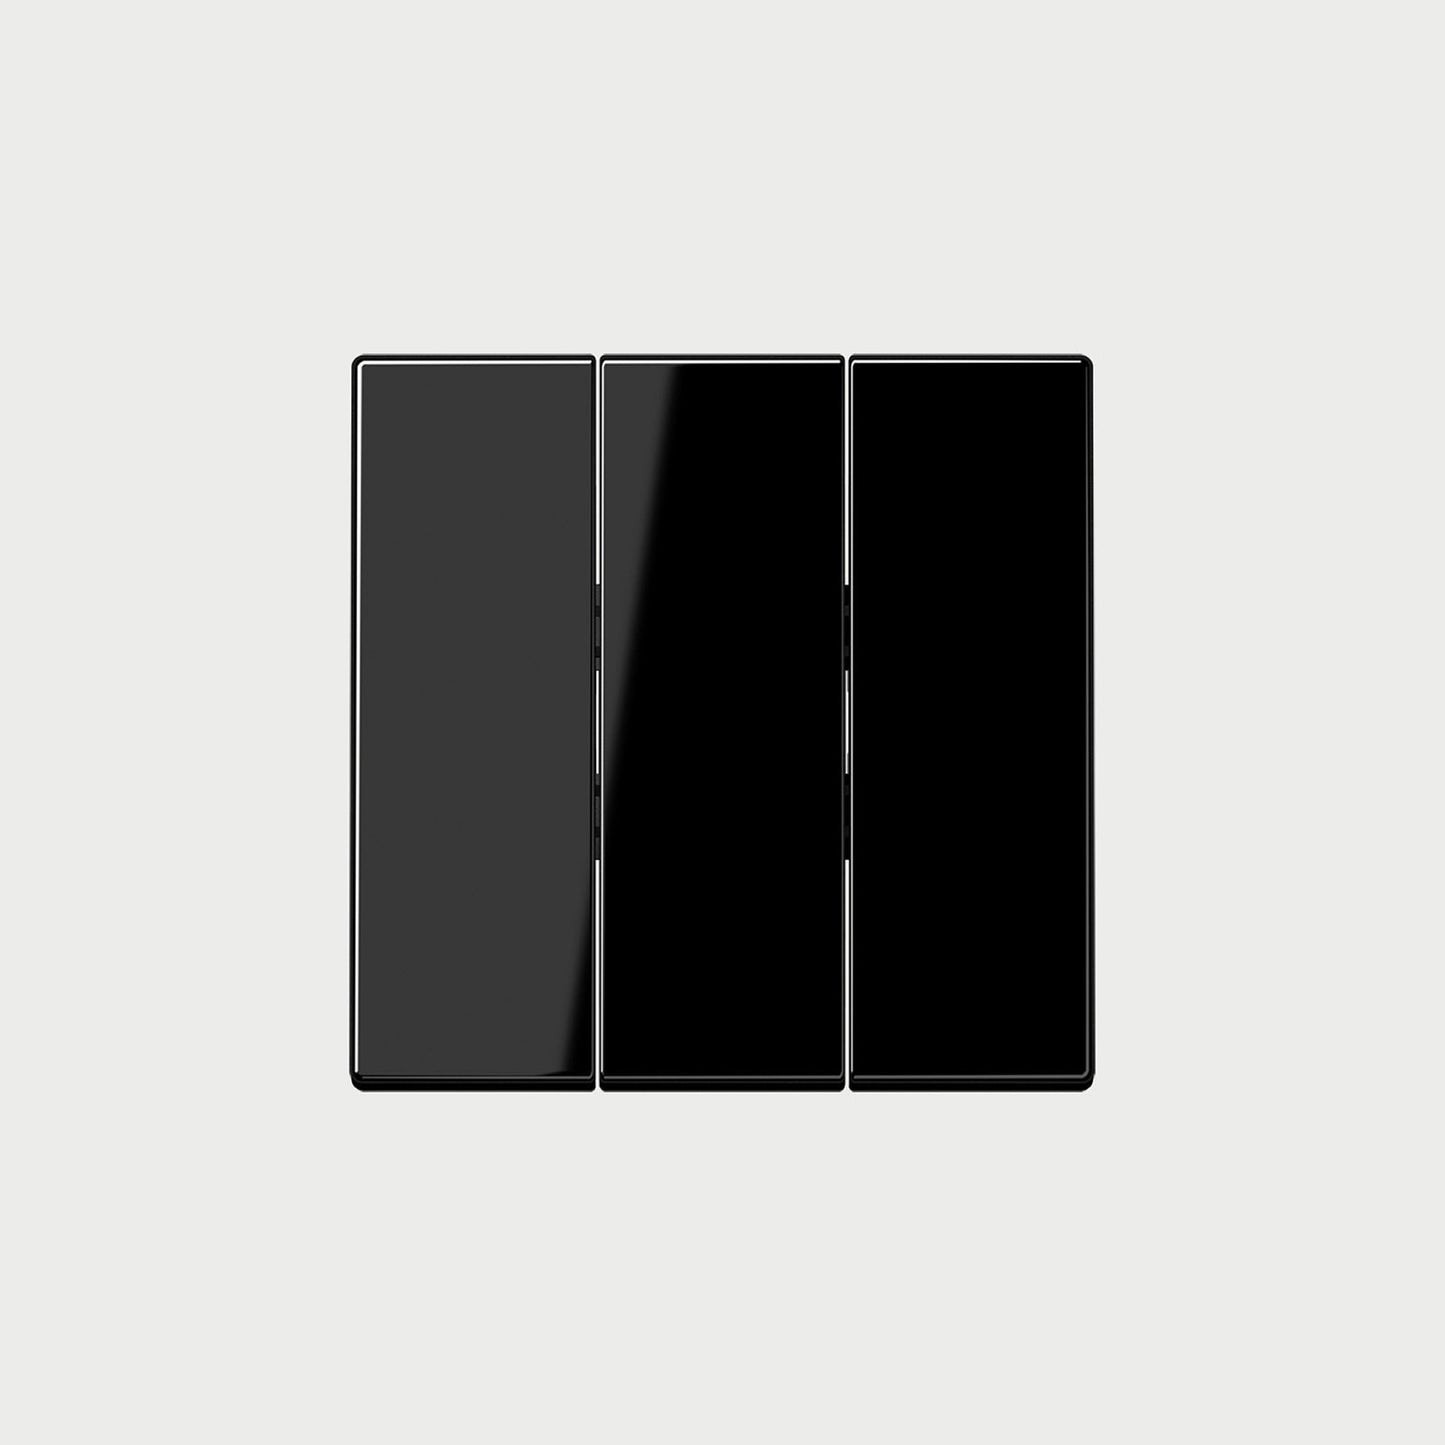 Ls993 (Plastic) Black Cover